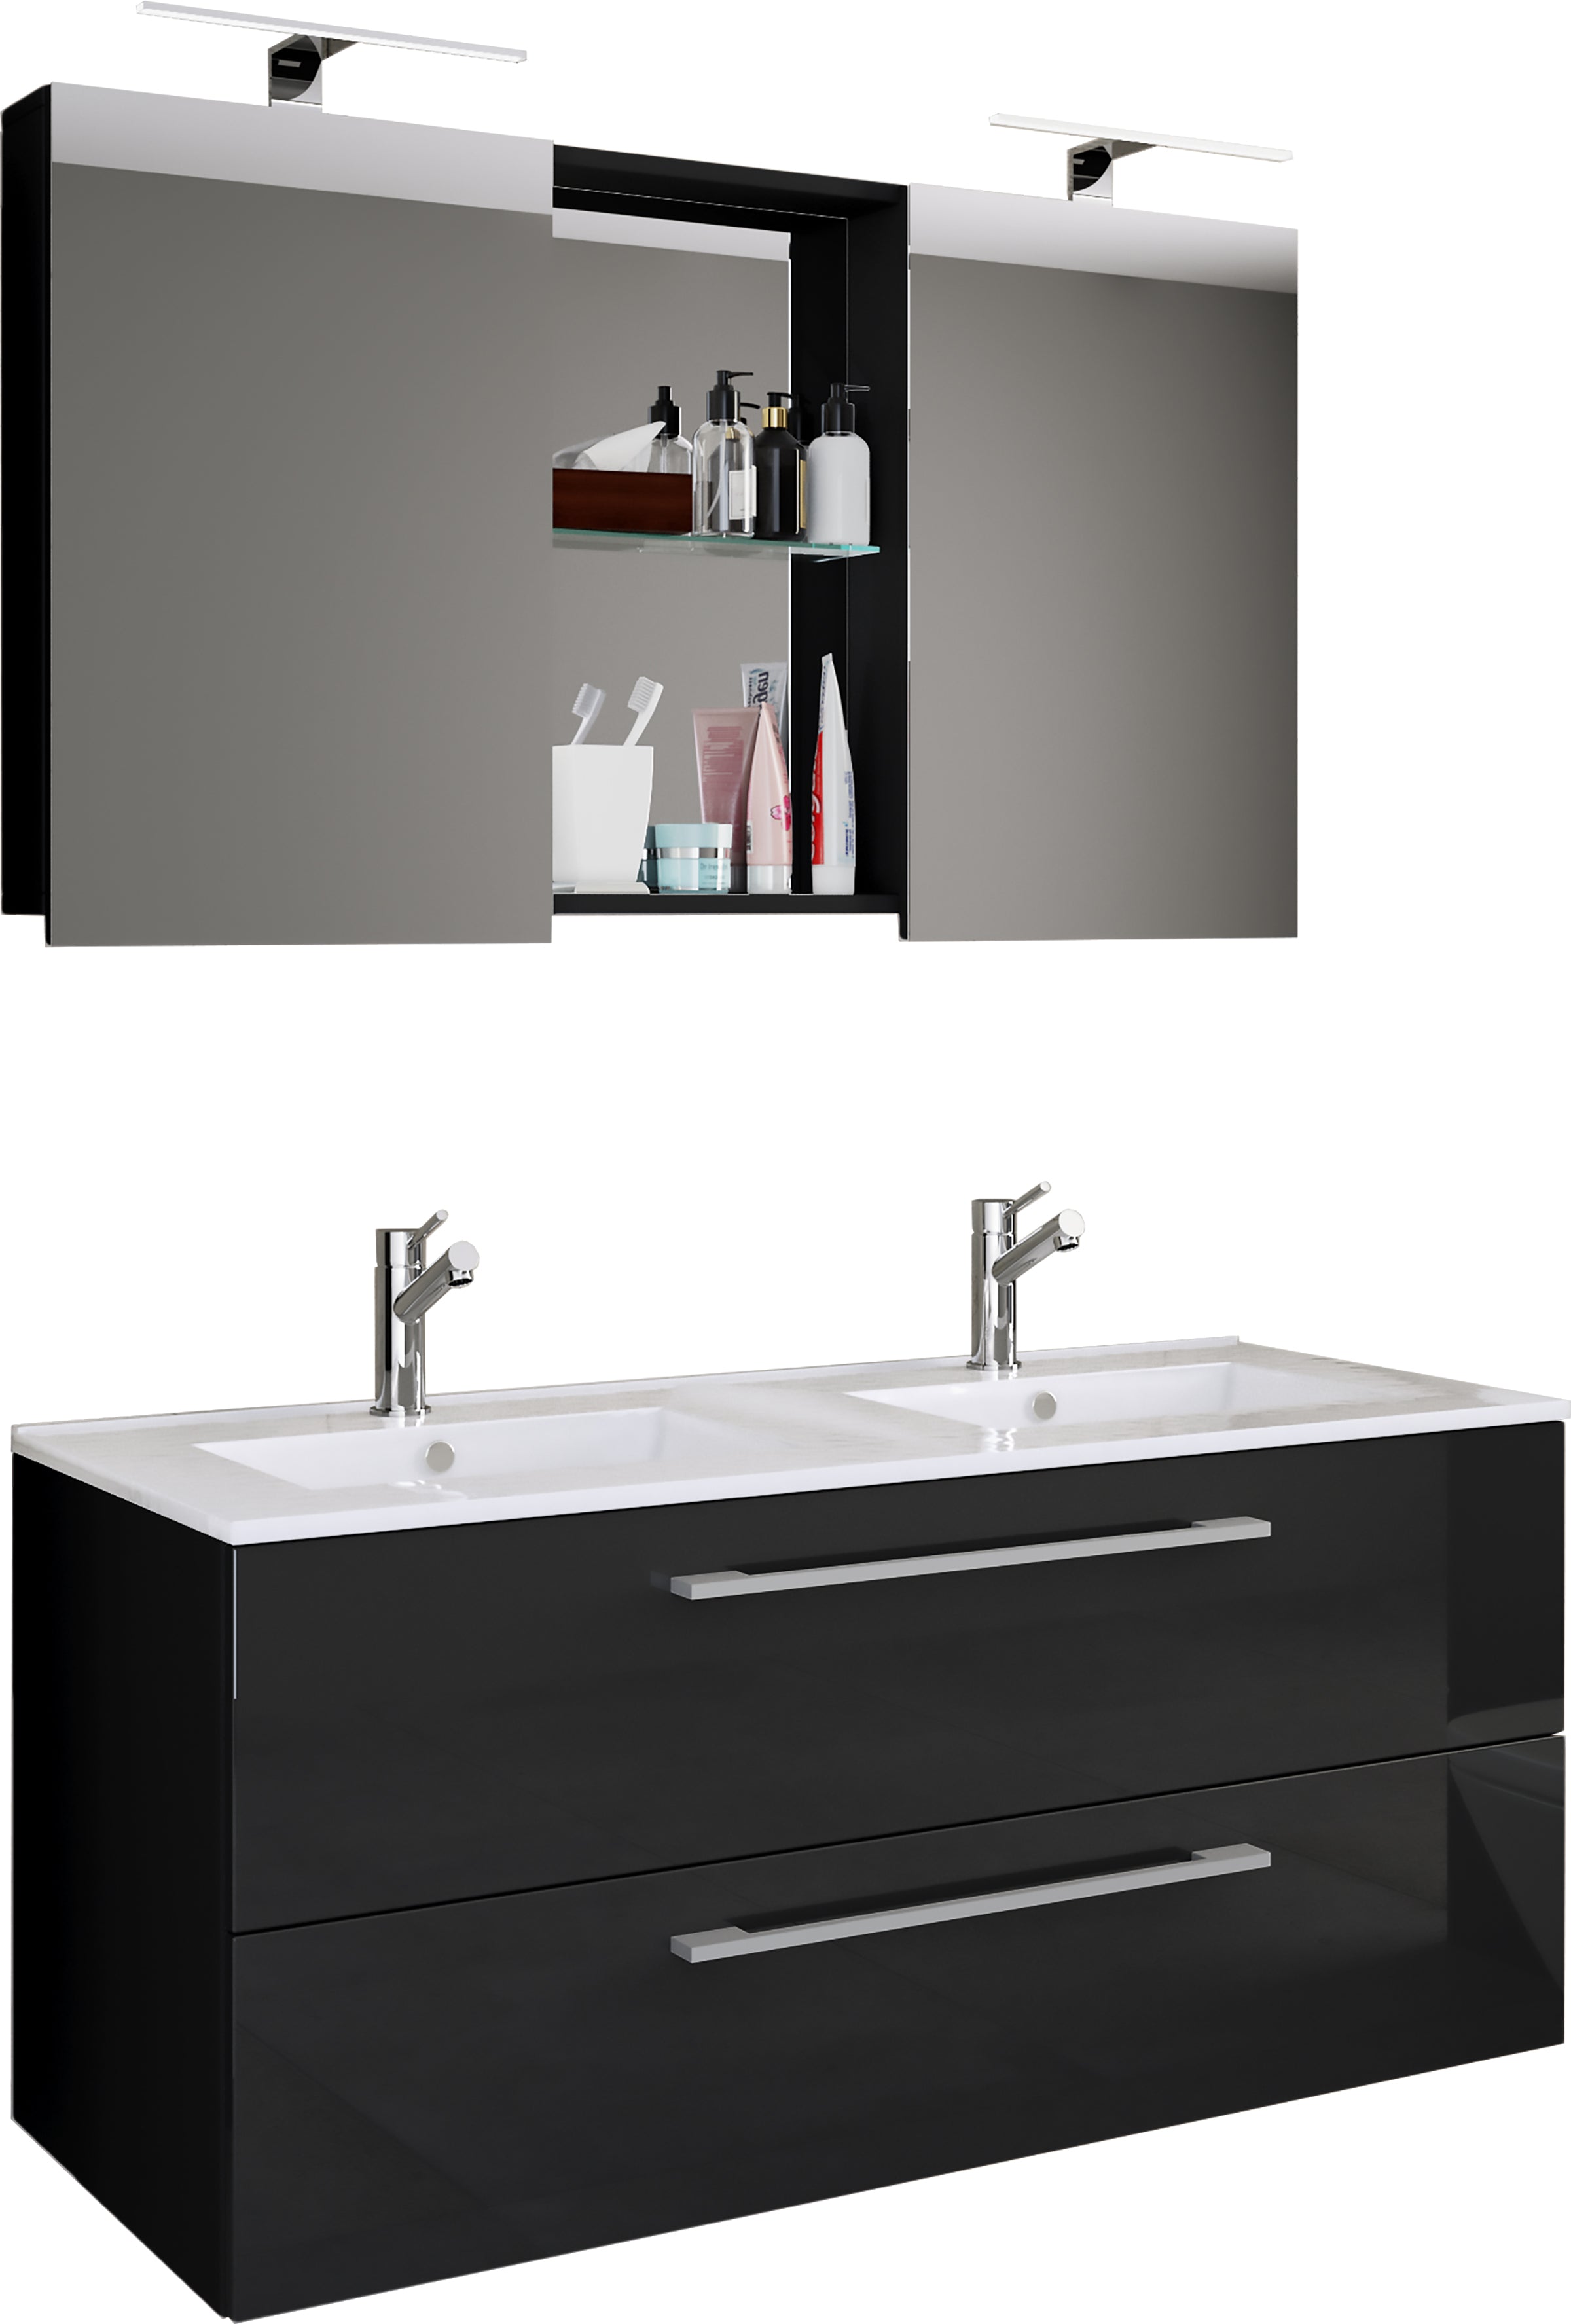 Billede af Underskab med keramisk vask og spejl, h. 51 x b. 111 x d. 46 cm, sort